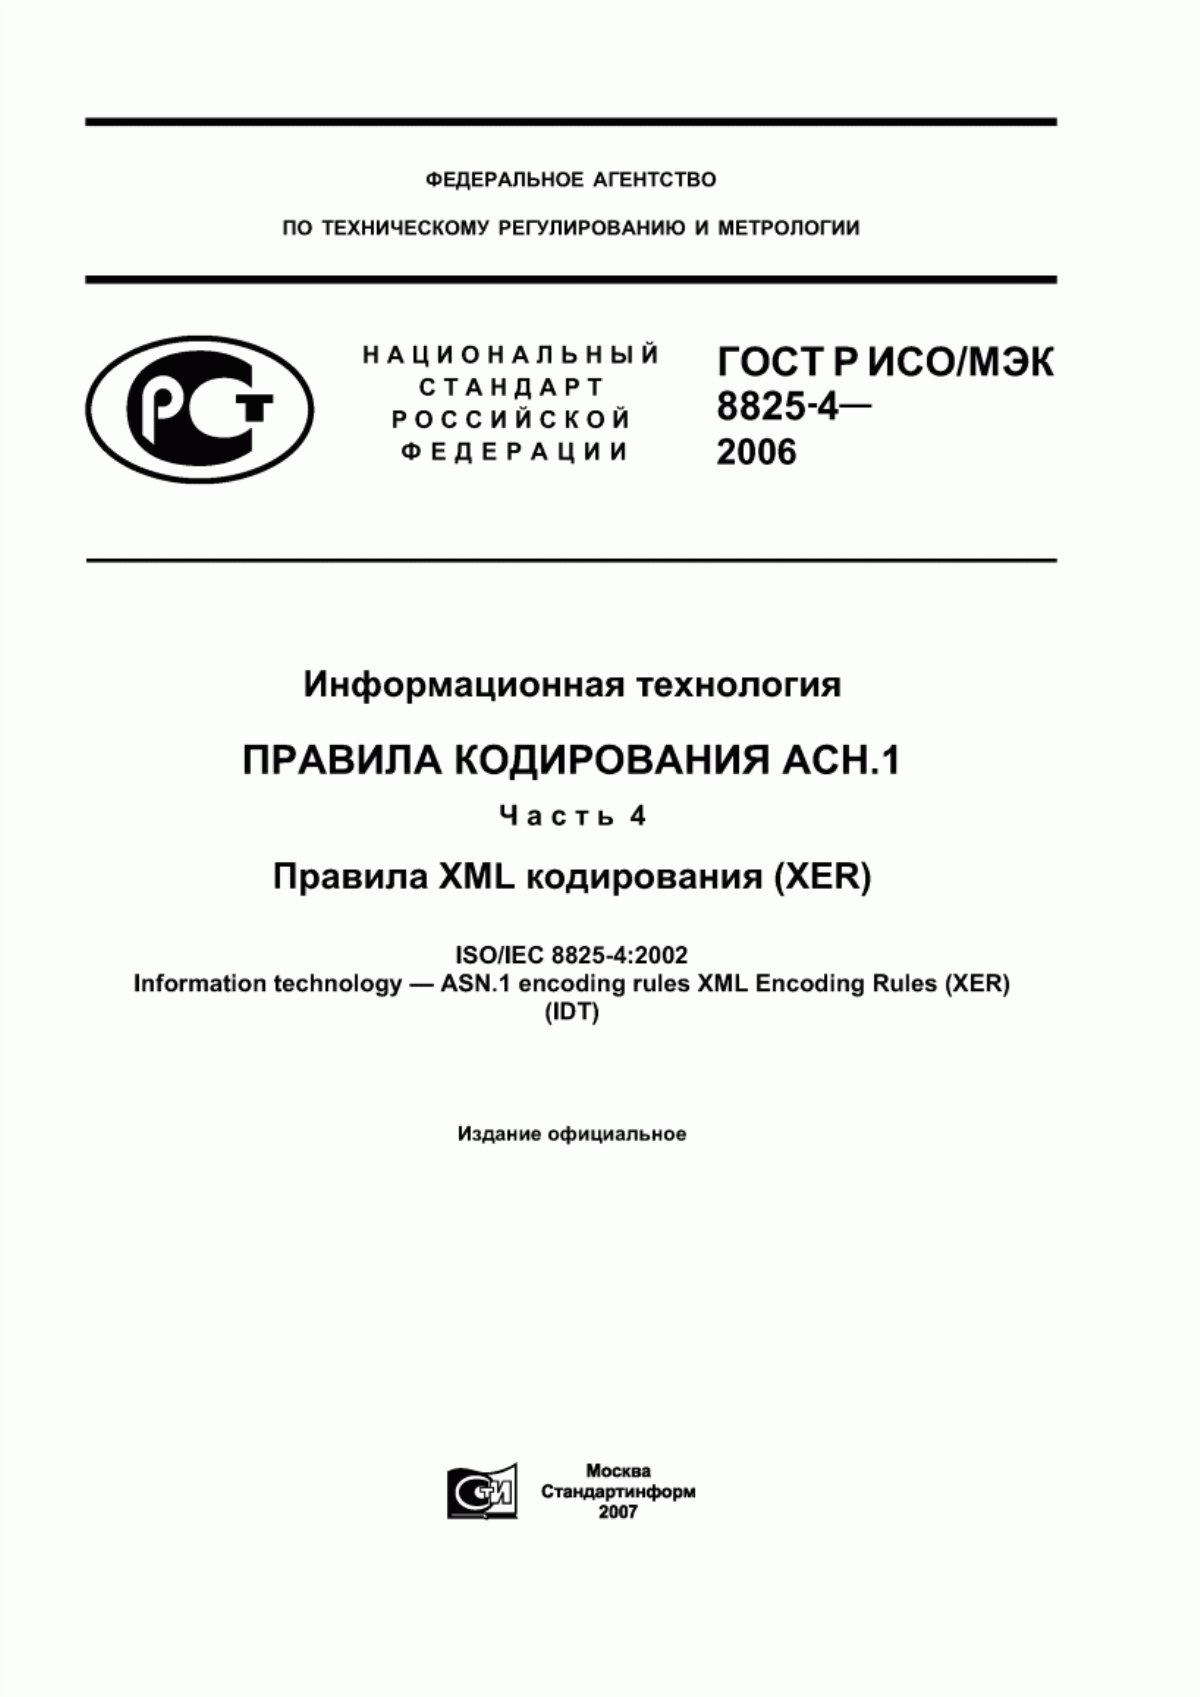 ГОСТ Р ИСО/МЭК 8825-4-2006 Информационная технология. Правила кодирования АСН.1. Часть 4. Правила XML кодирования (XER)